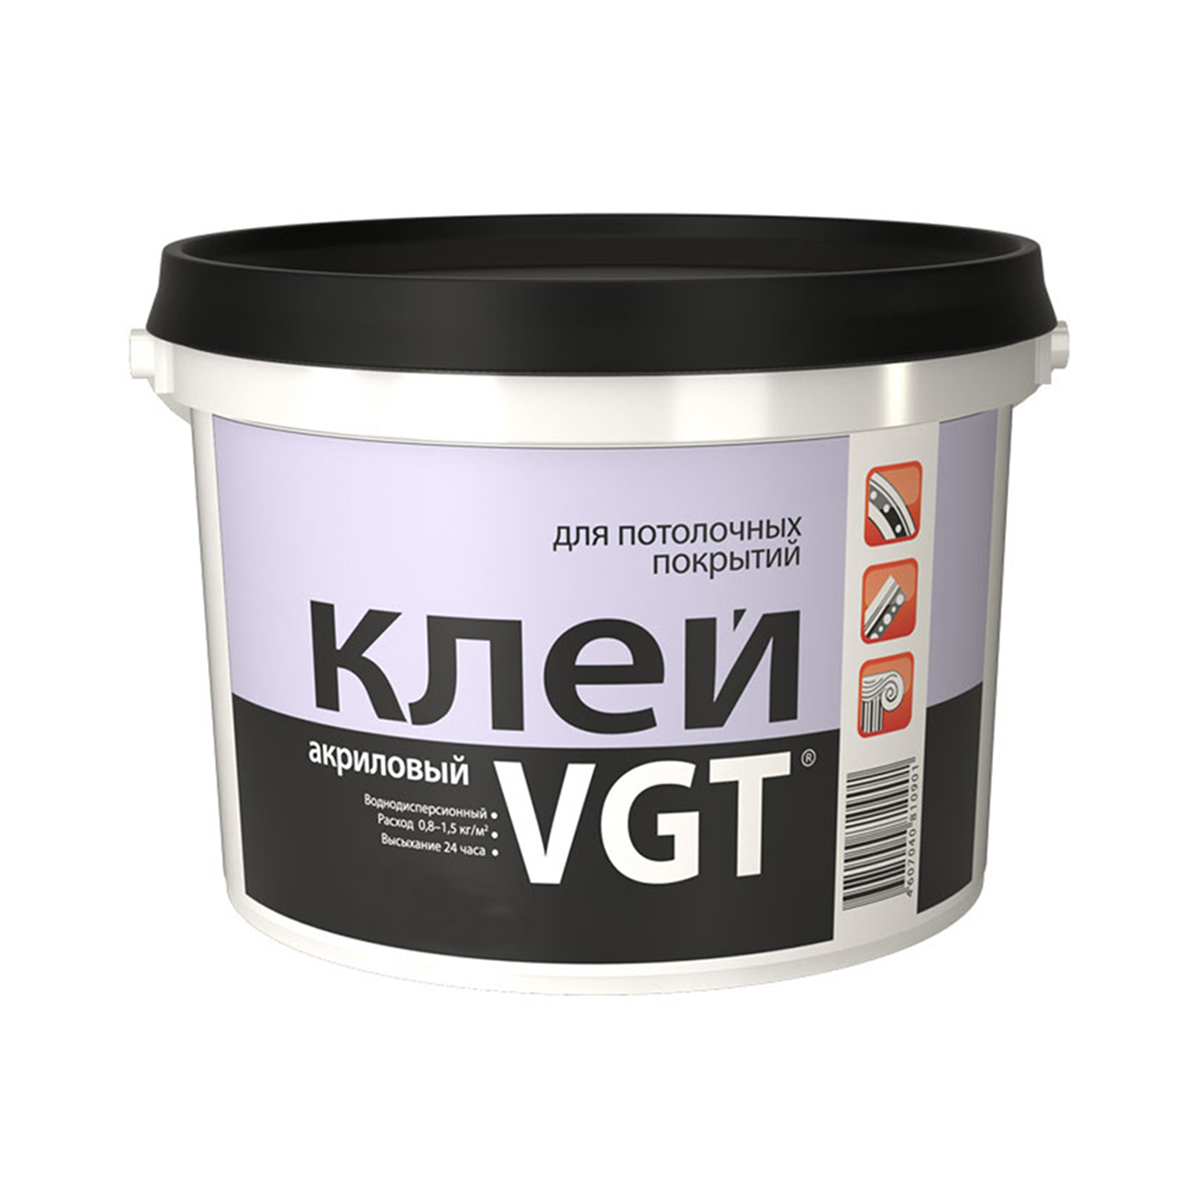 Клей для потолочных покрытий VGT, акриловый, 0,5 кг морозостойкий клей для пвх покрытий homakoll